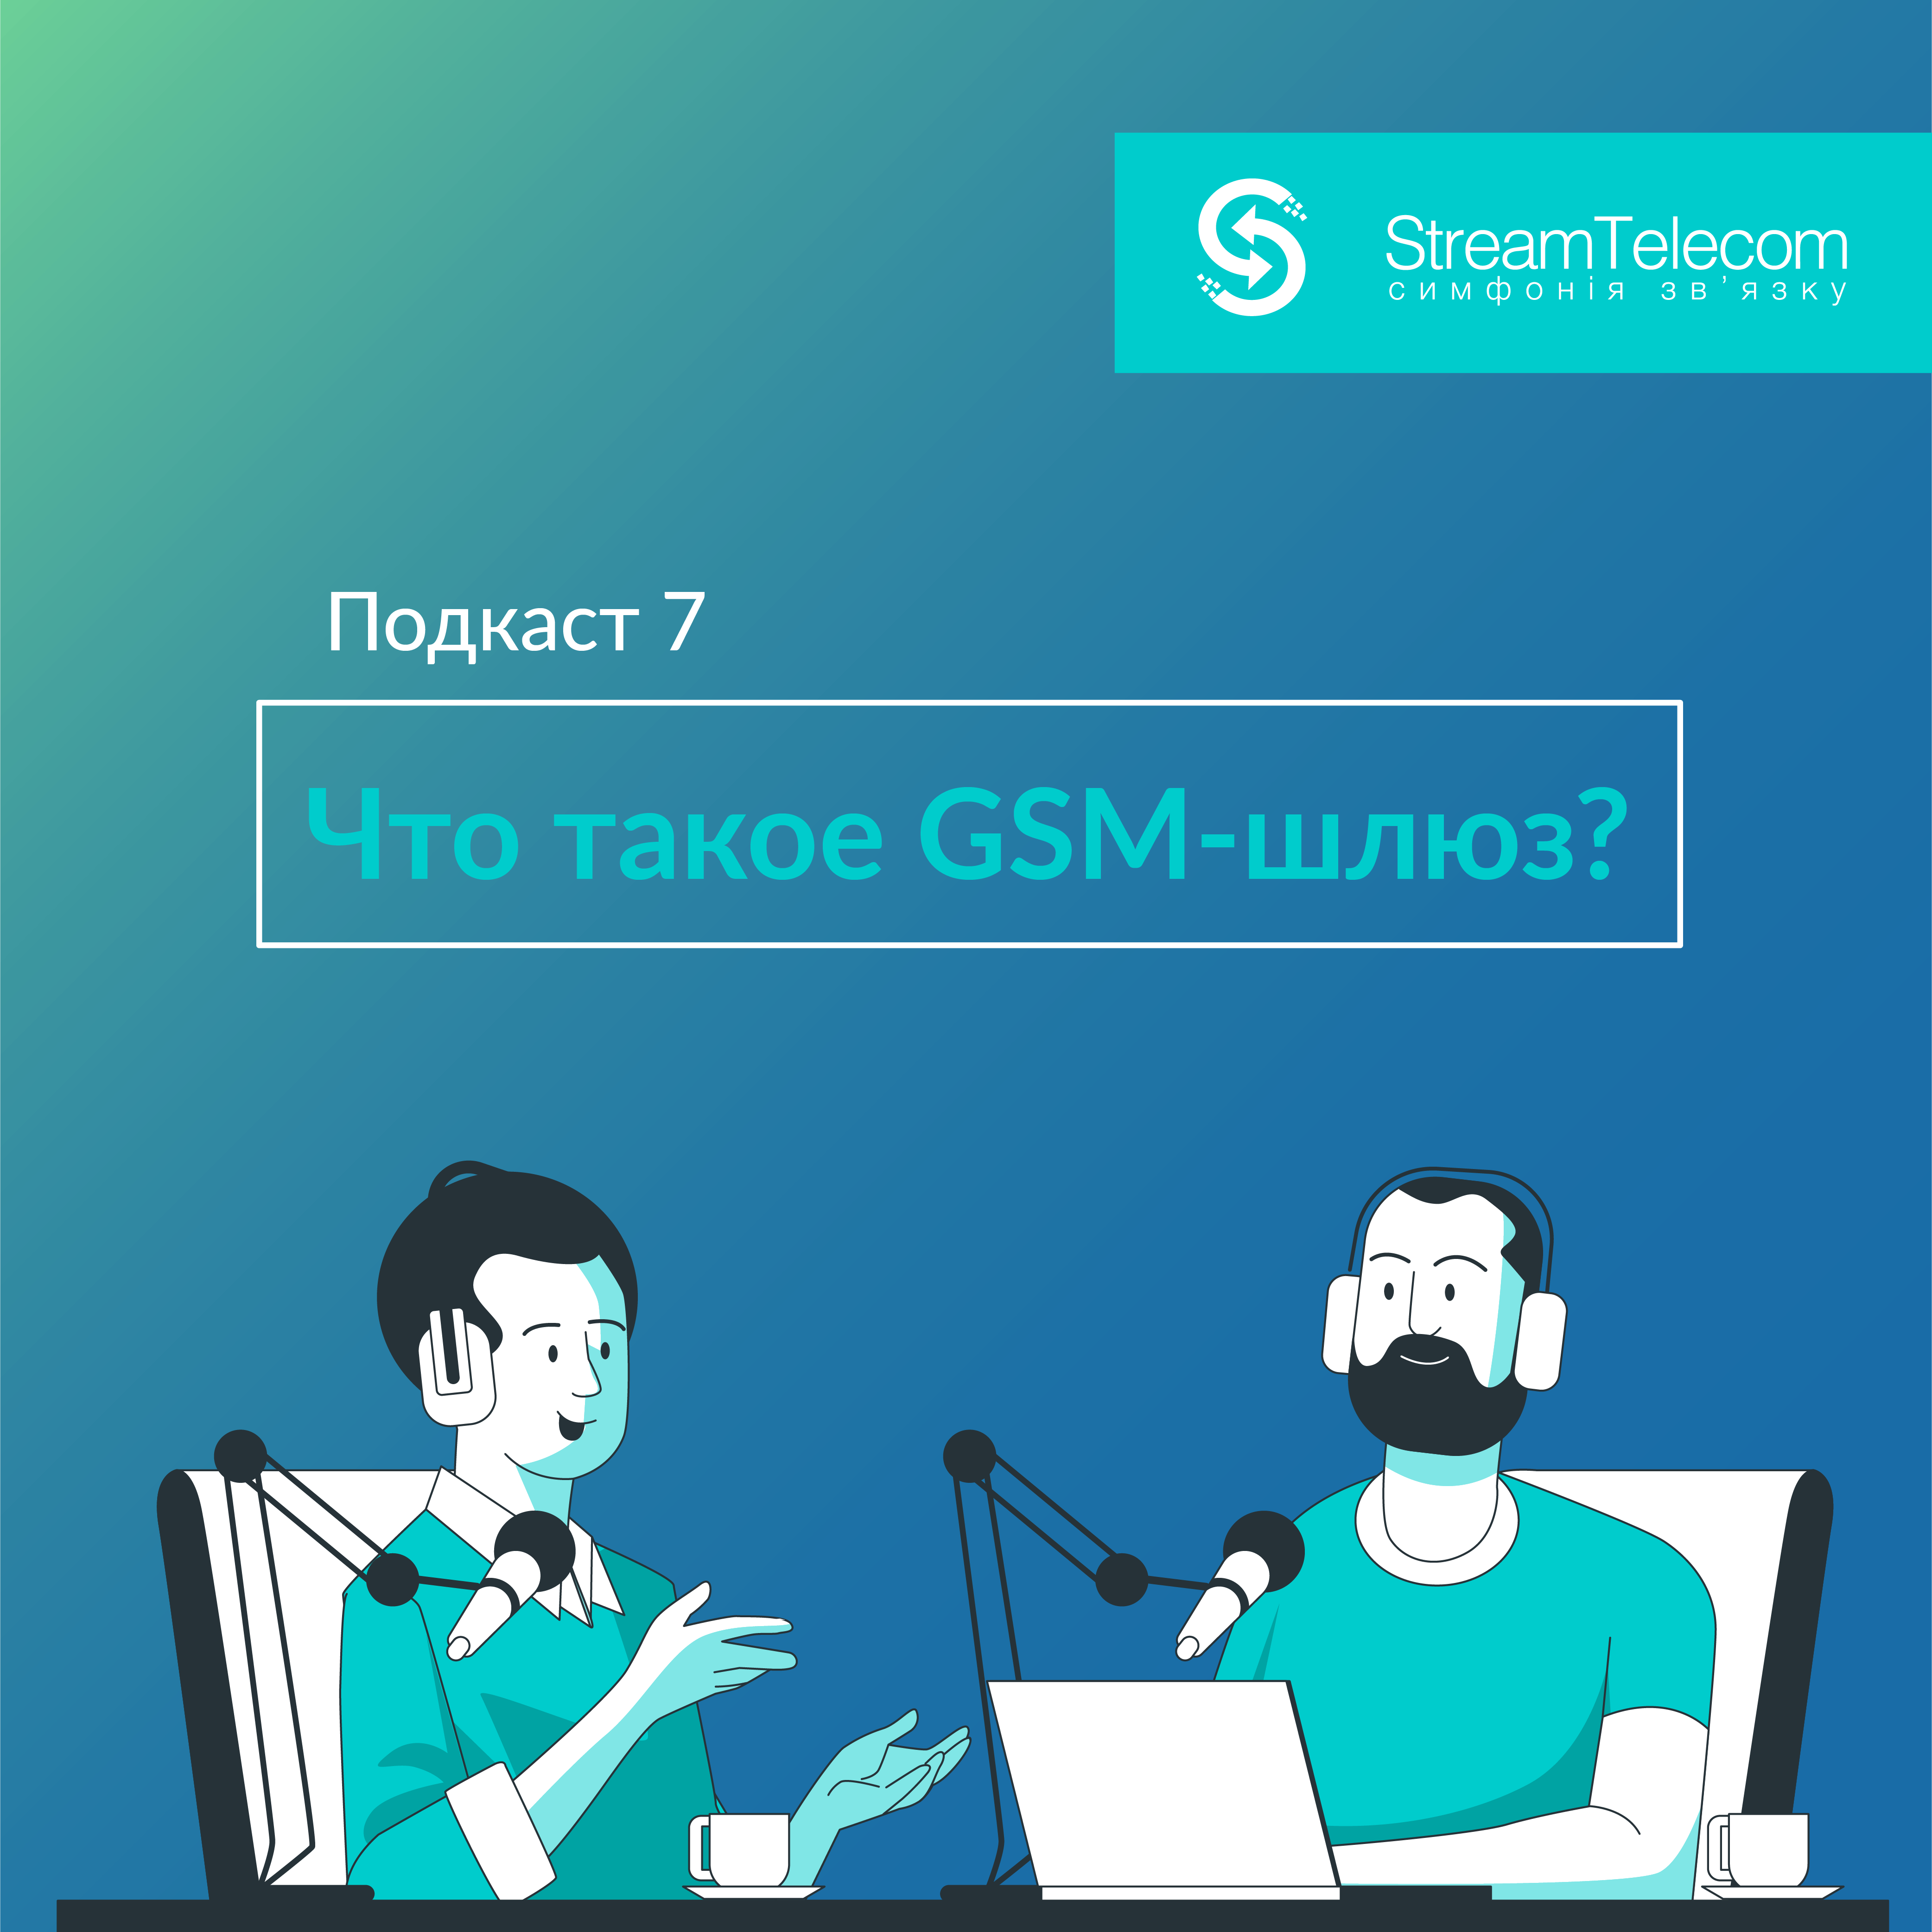 Что такое GSM-шлюз?